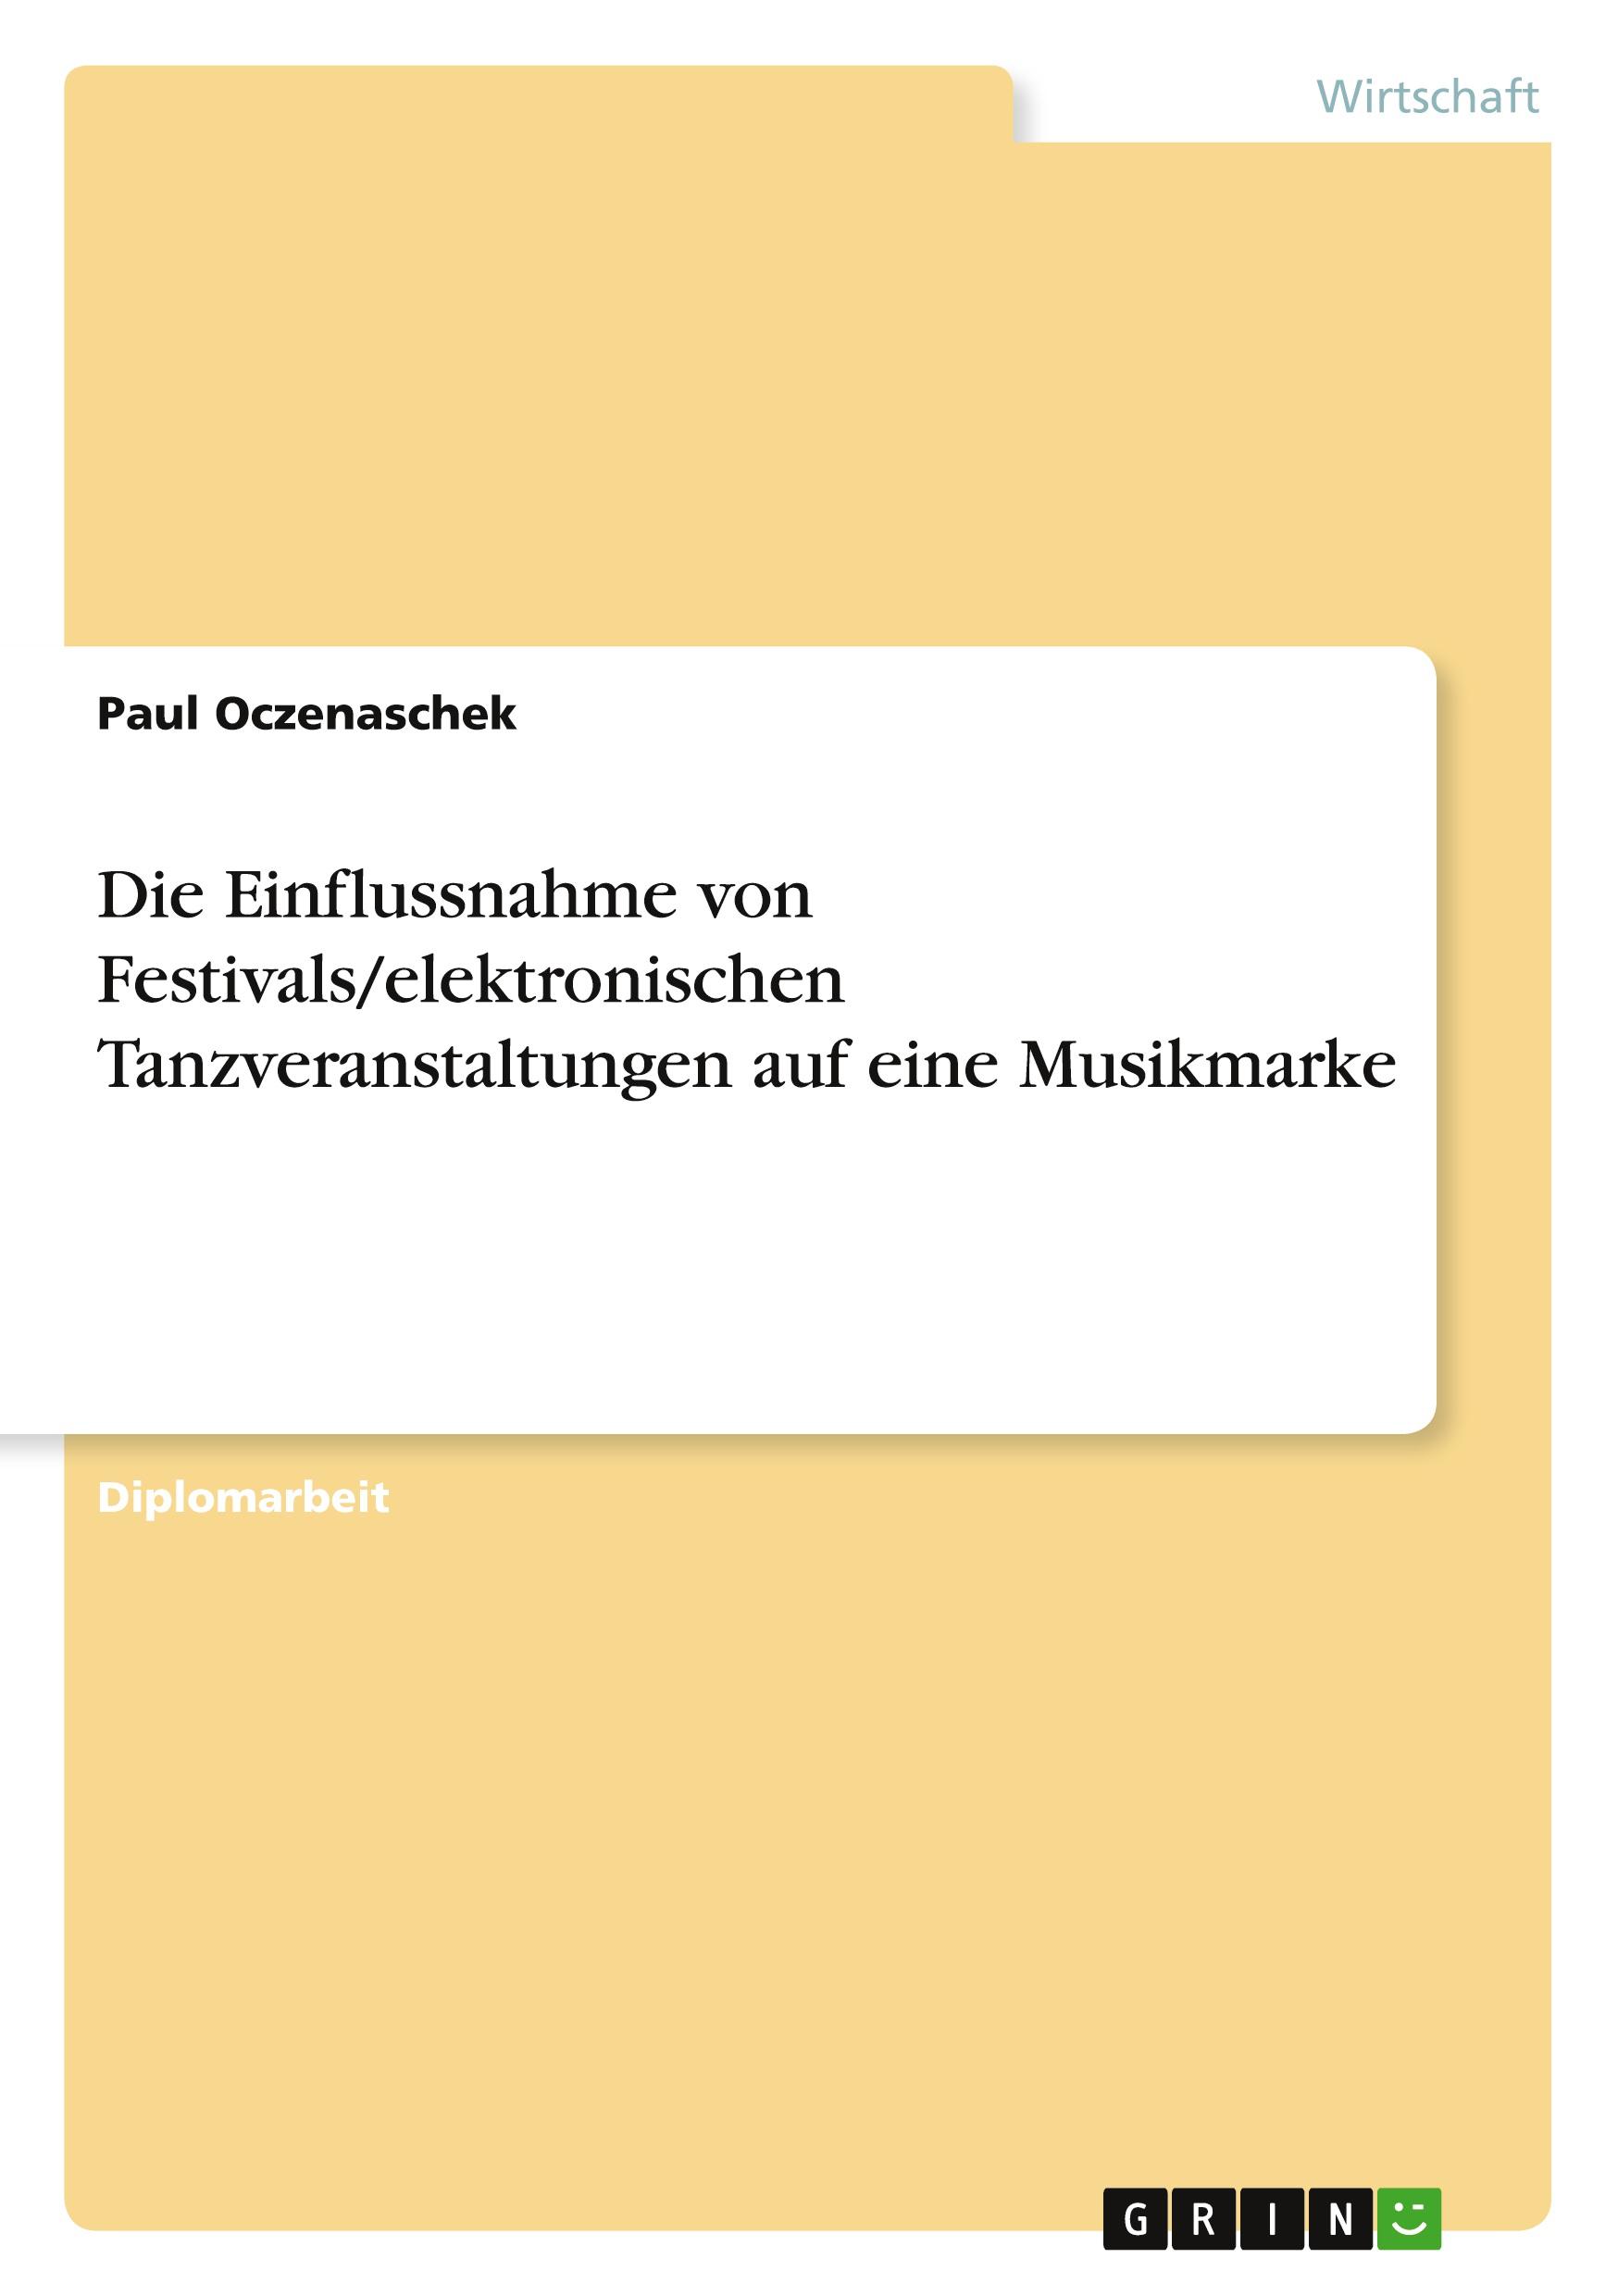 Die Einflussnahme von Festivals/elektronischen Tanzveranstaltungen auf eine Musikmarke - Oczenaschek, Paul